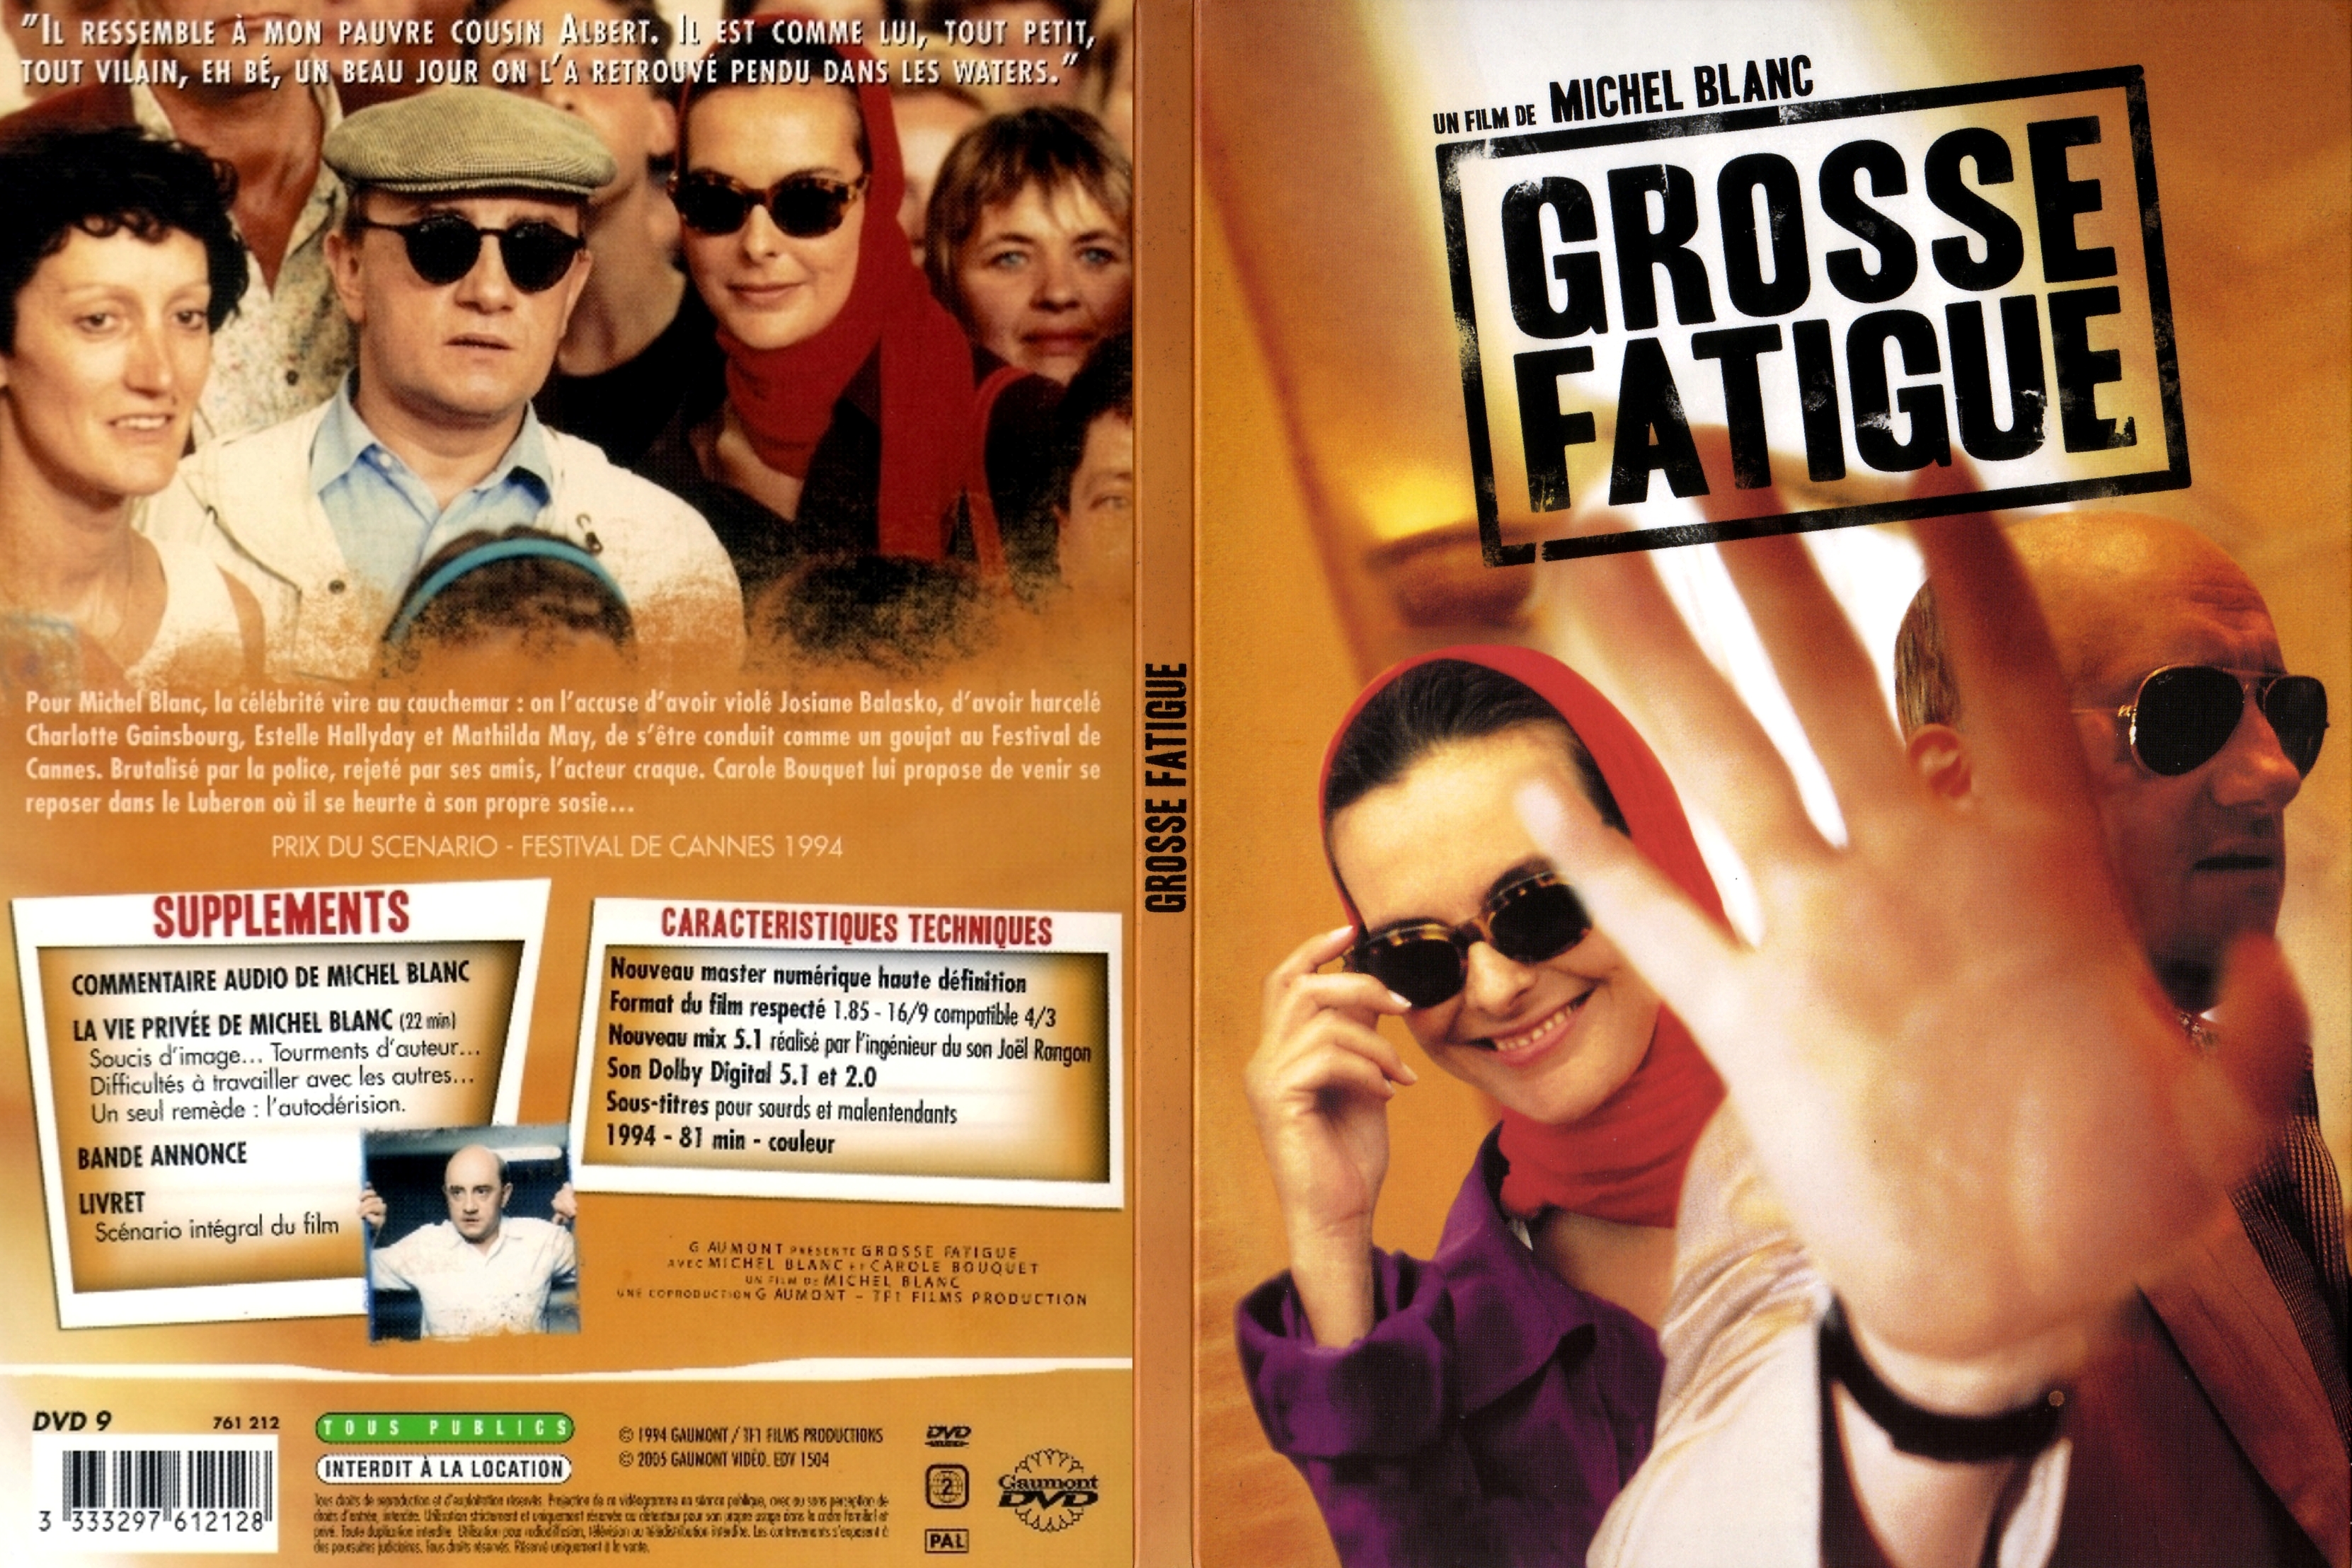 Jaquette DVD Grosse fatigue v2